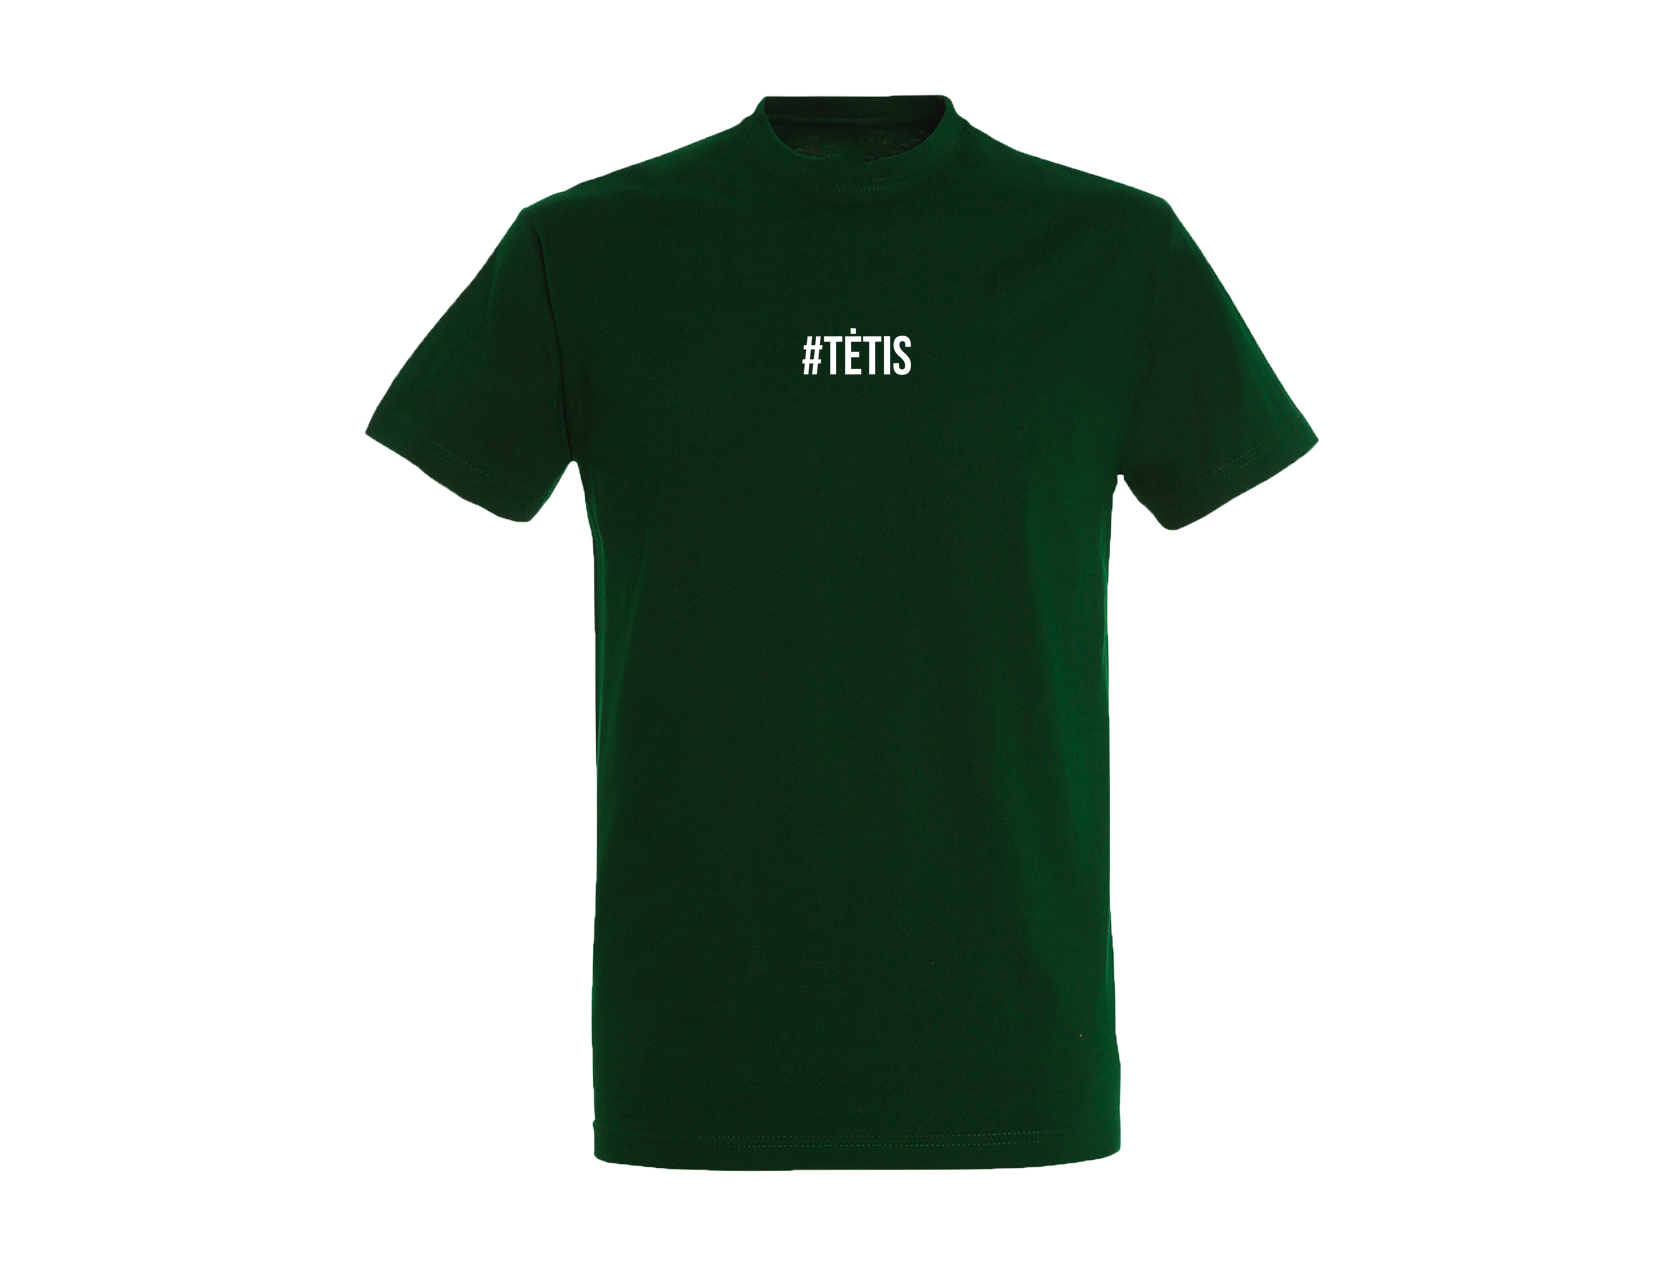 Tamsiai žali minimalistiniai marškinėliai #TĖTIS